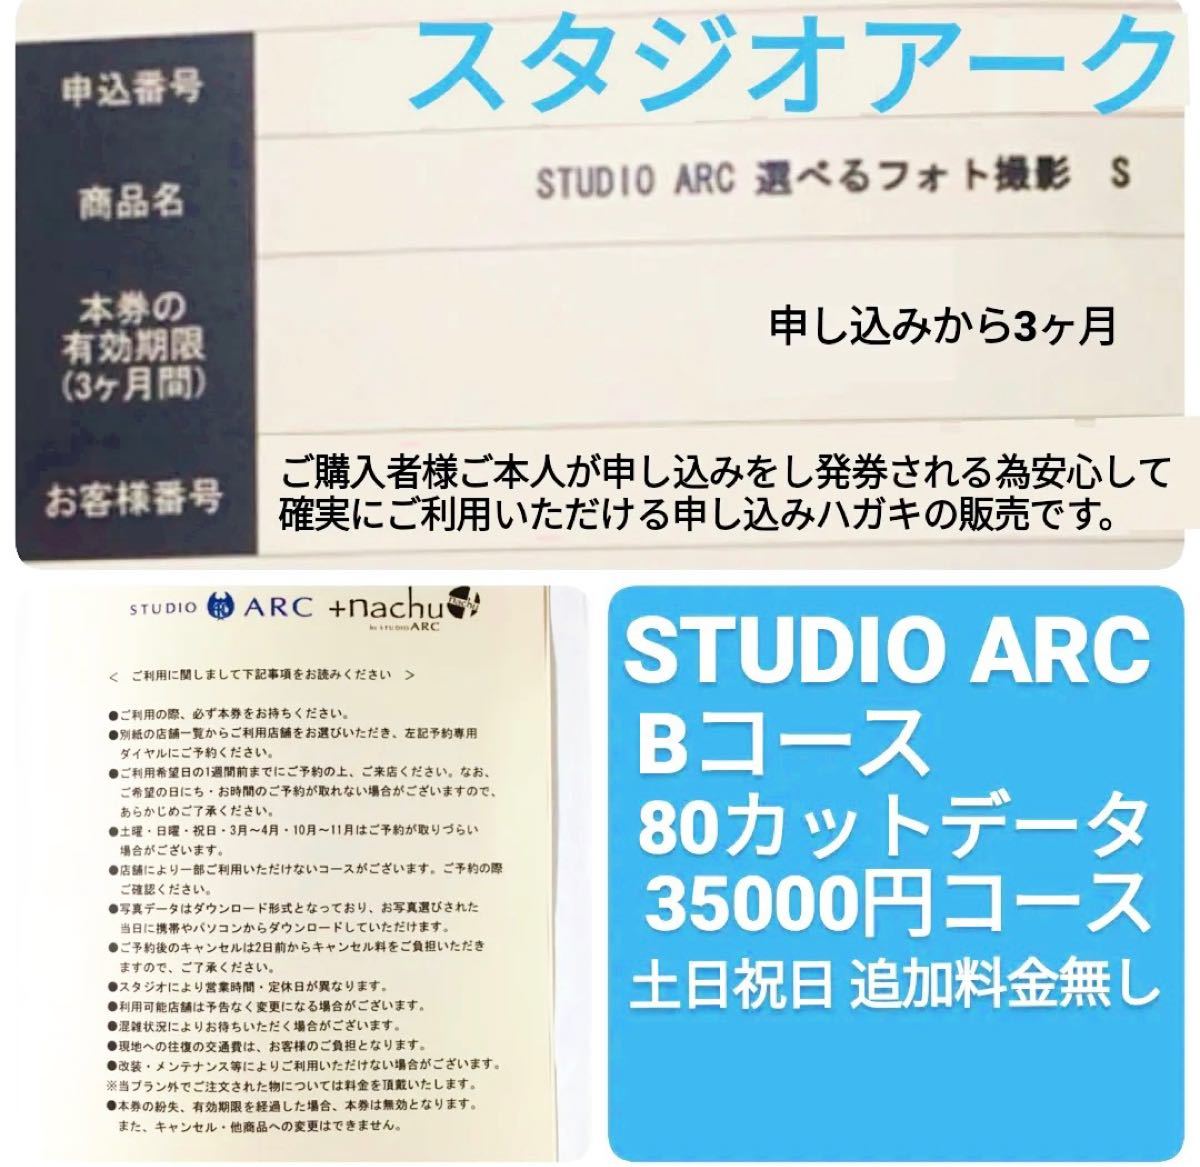 スタジオアーク studioarc 選べるフォト撮影 Bコース 利用券 撮影券-